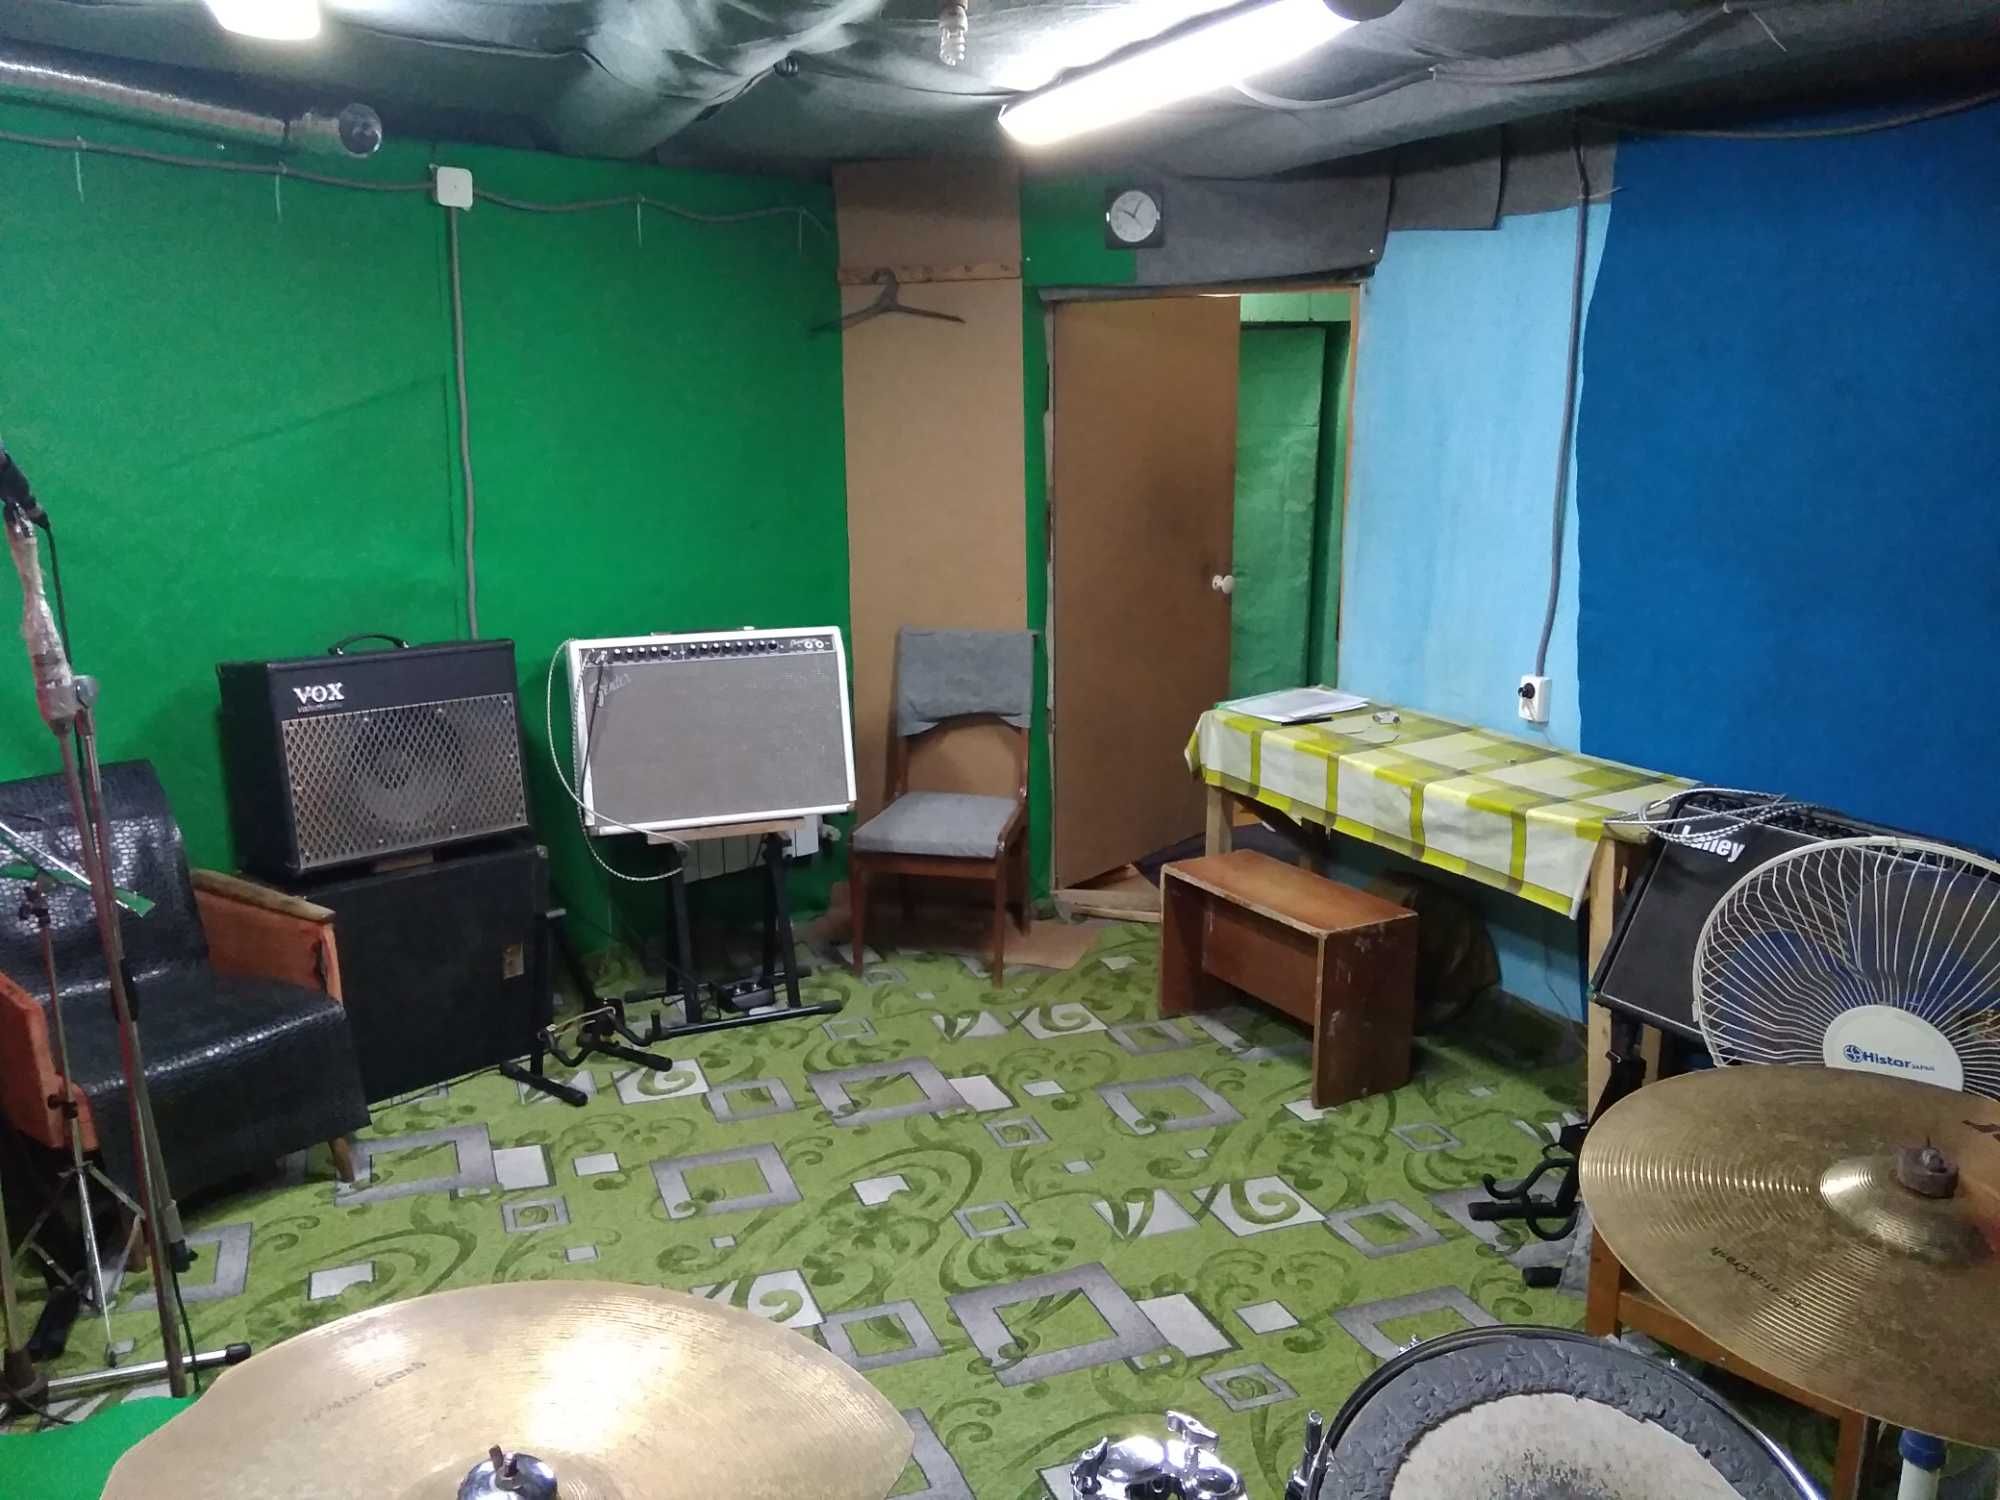 Репетиційна база, студія звукозапису Рок Бункерок на "Малишева".